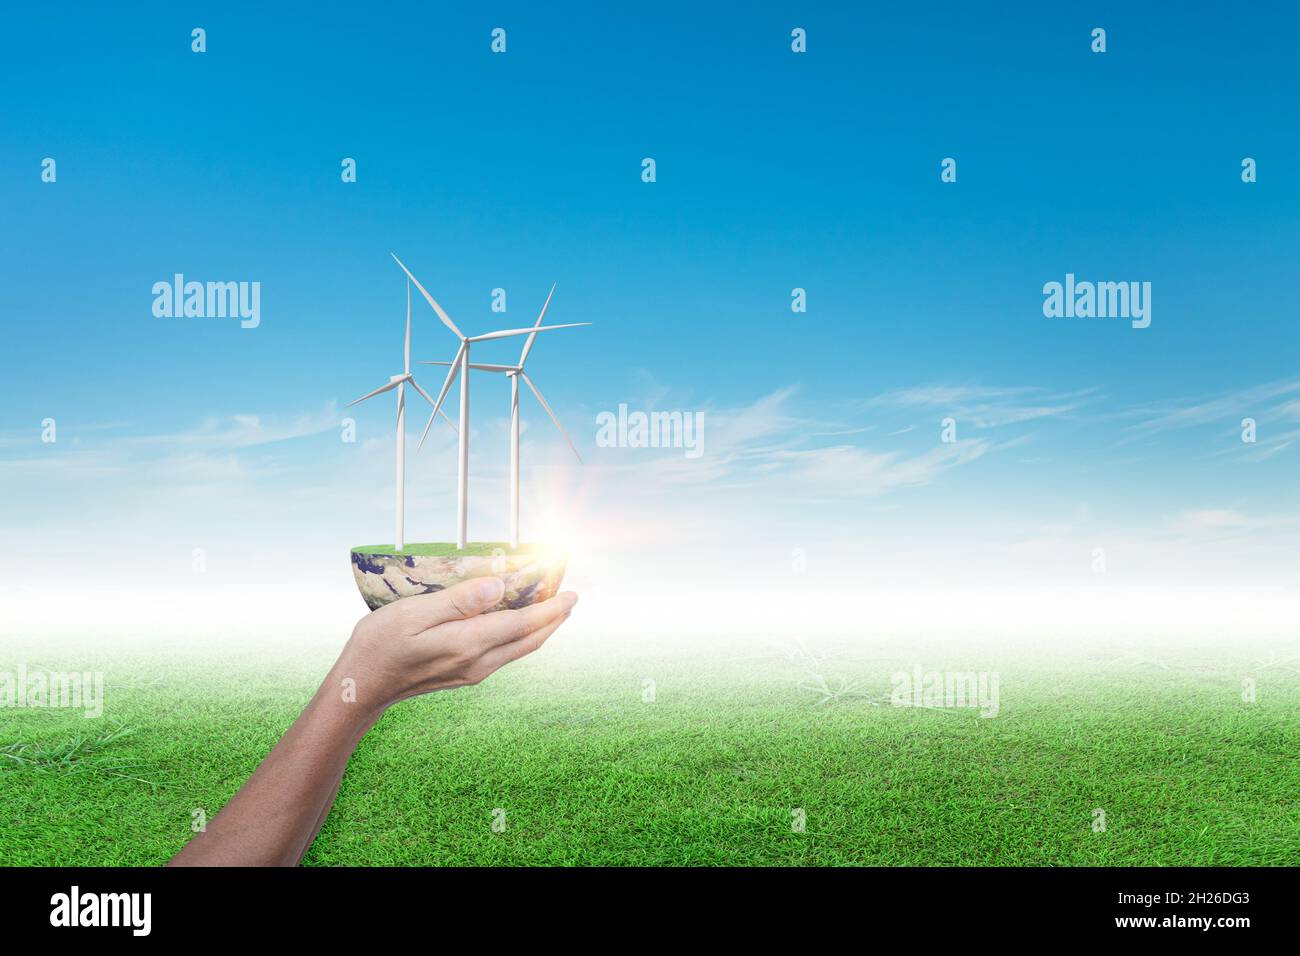 Mains tenant l'éolienne sur le terrain d'herbe contre fond bleu ciel. Concept d'écologie Banque D'Images